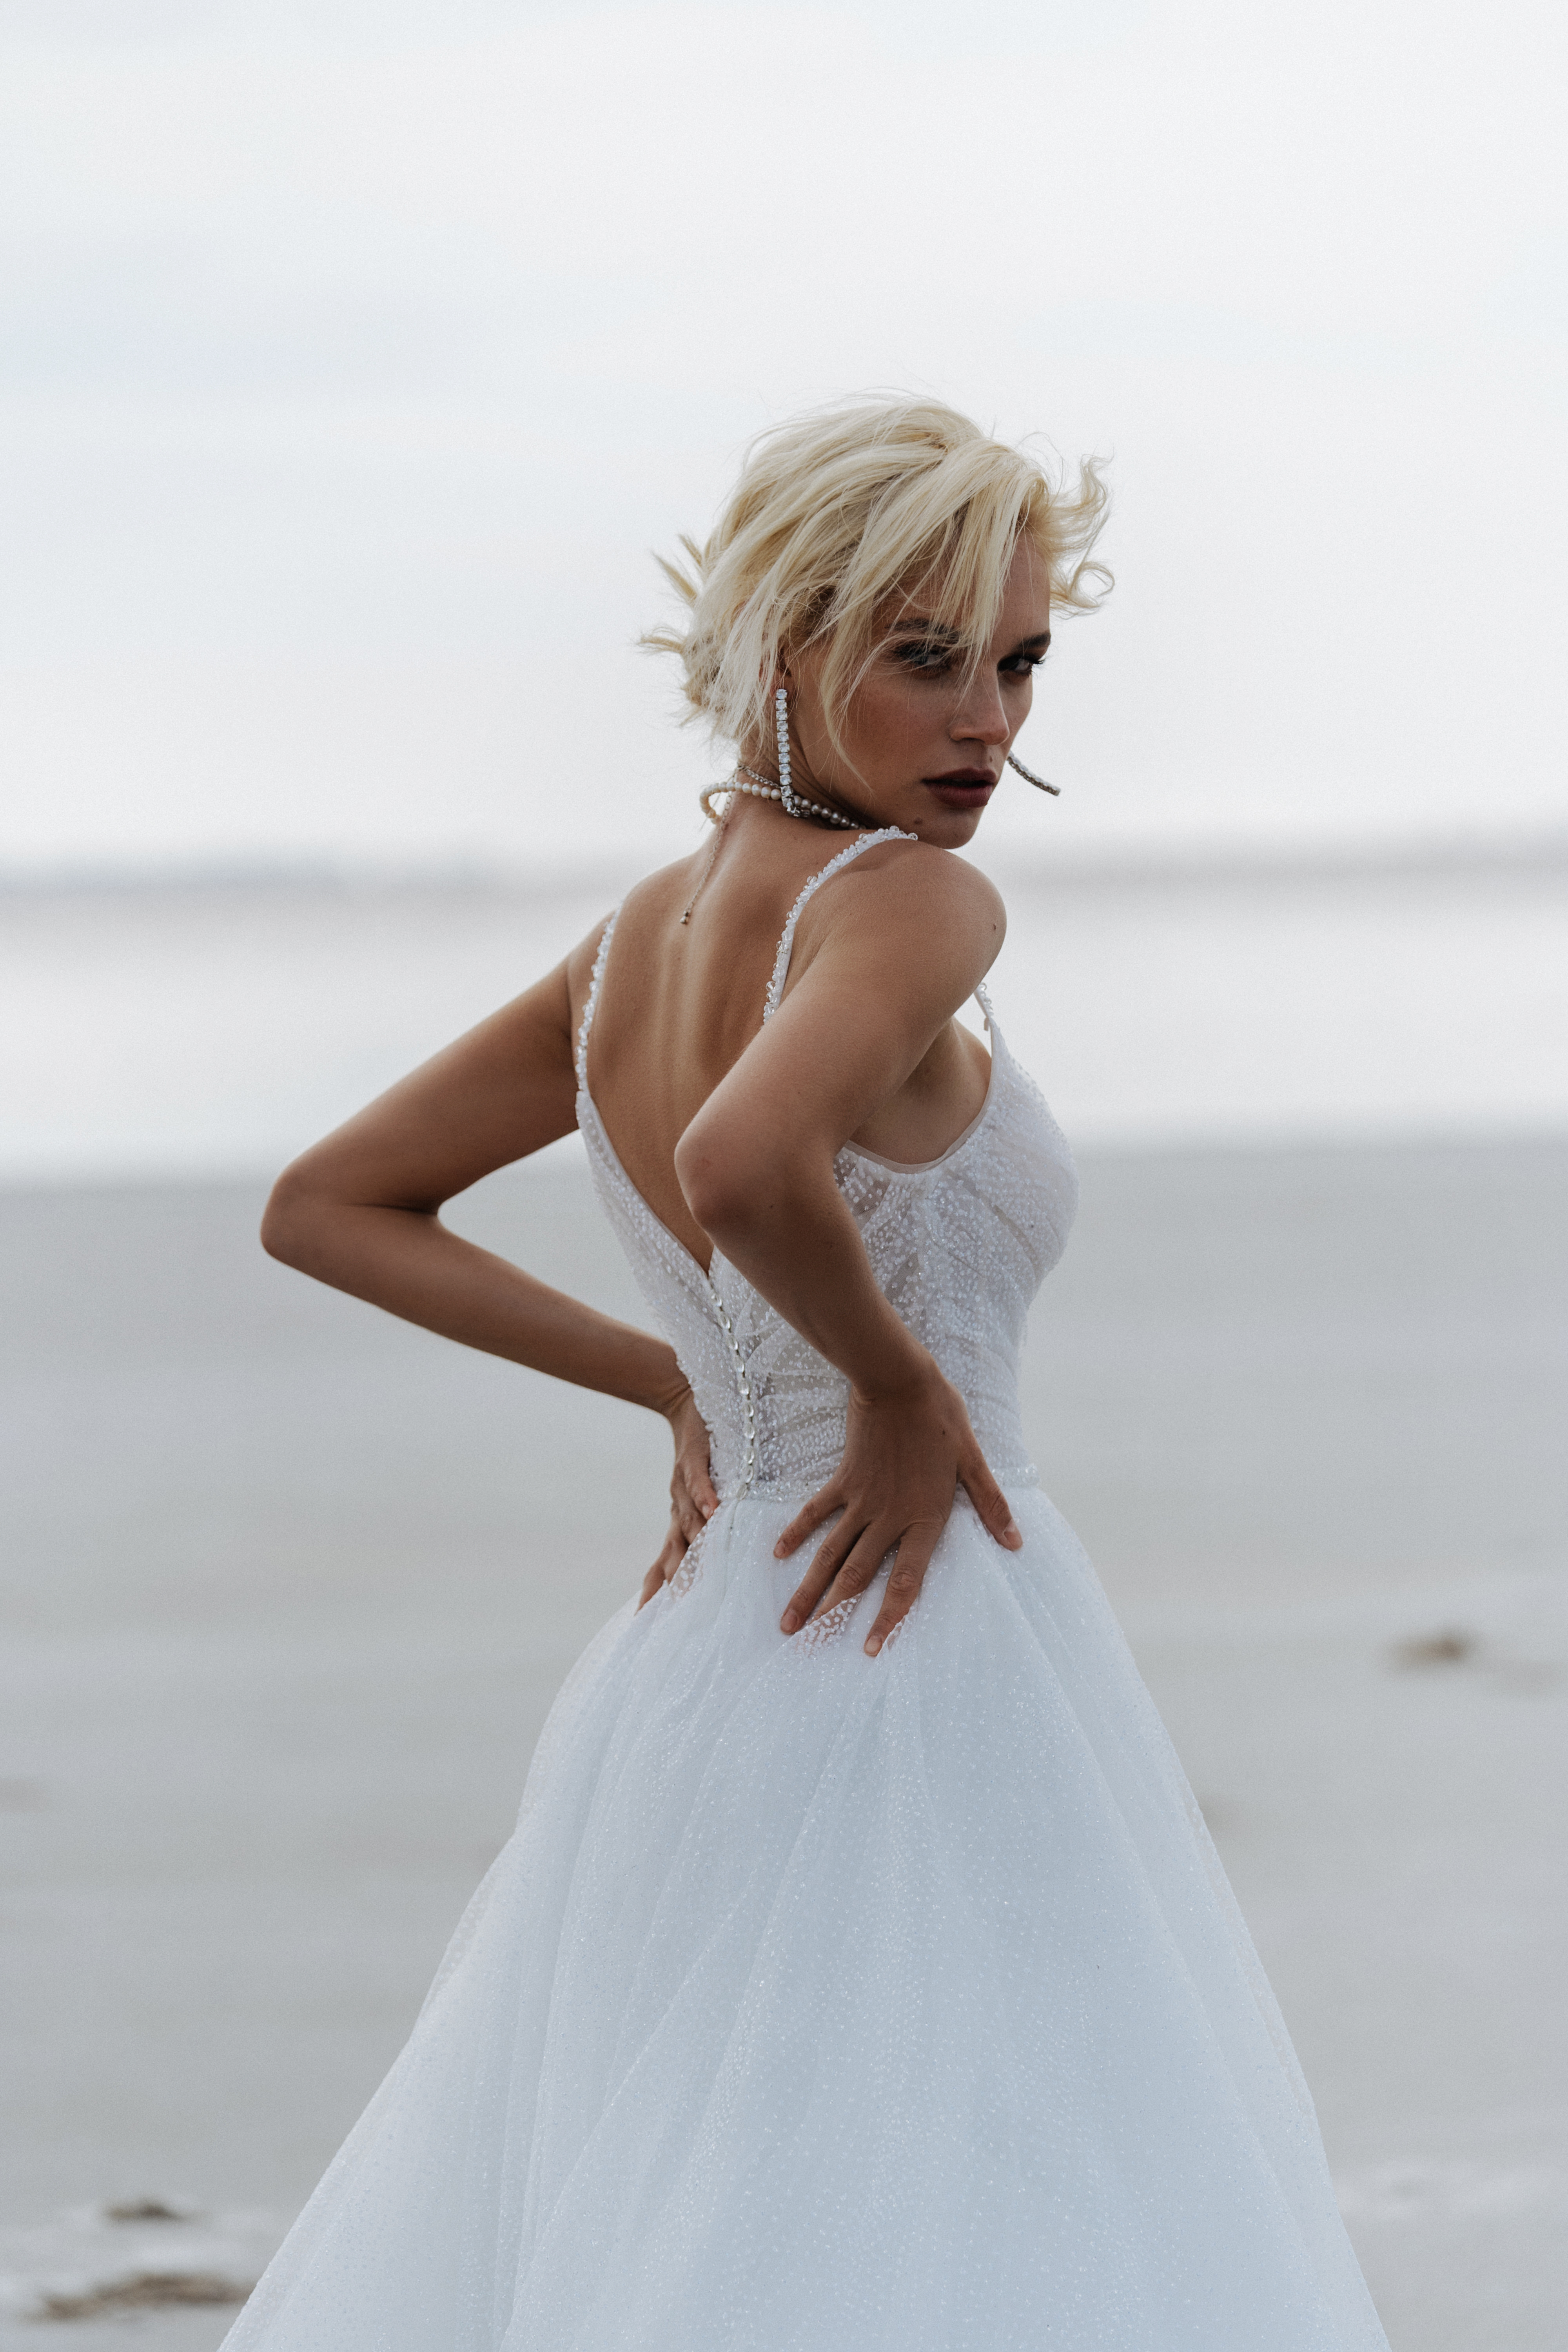 Купить свадебное платье «Эмили» Наталья Романова из коллекции Блаш 2022 года в салоне «Мэри Трюфель»